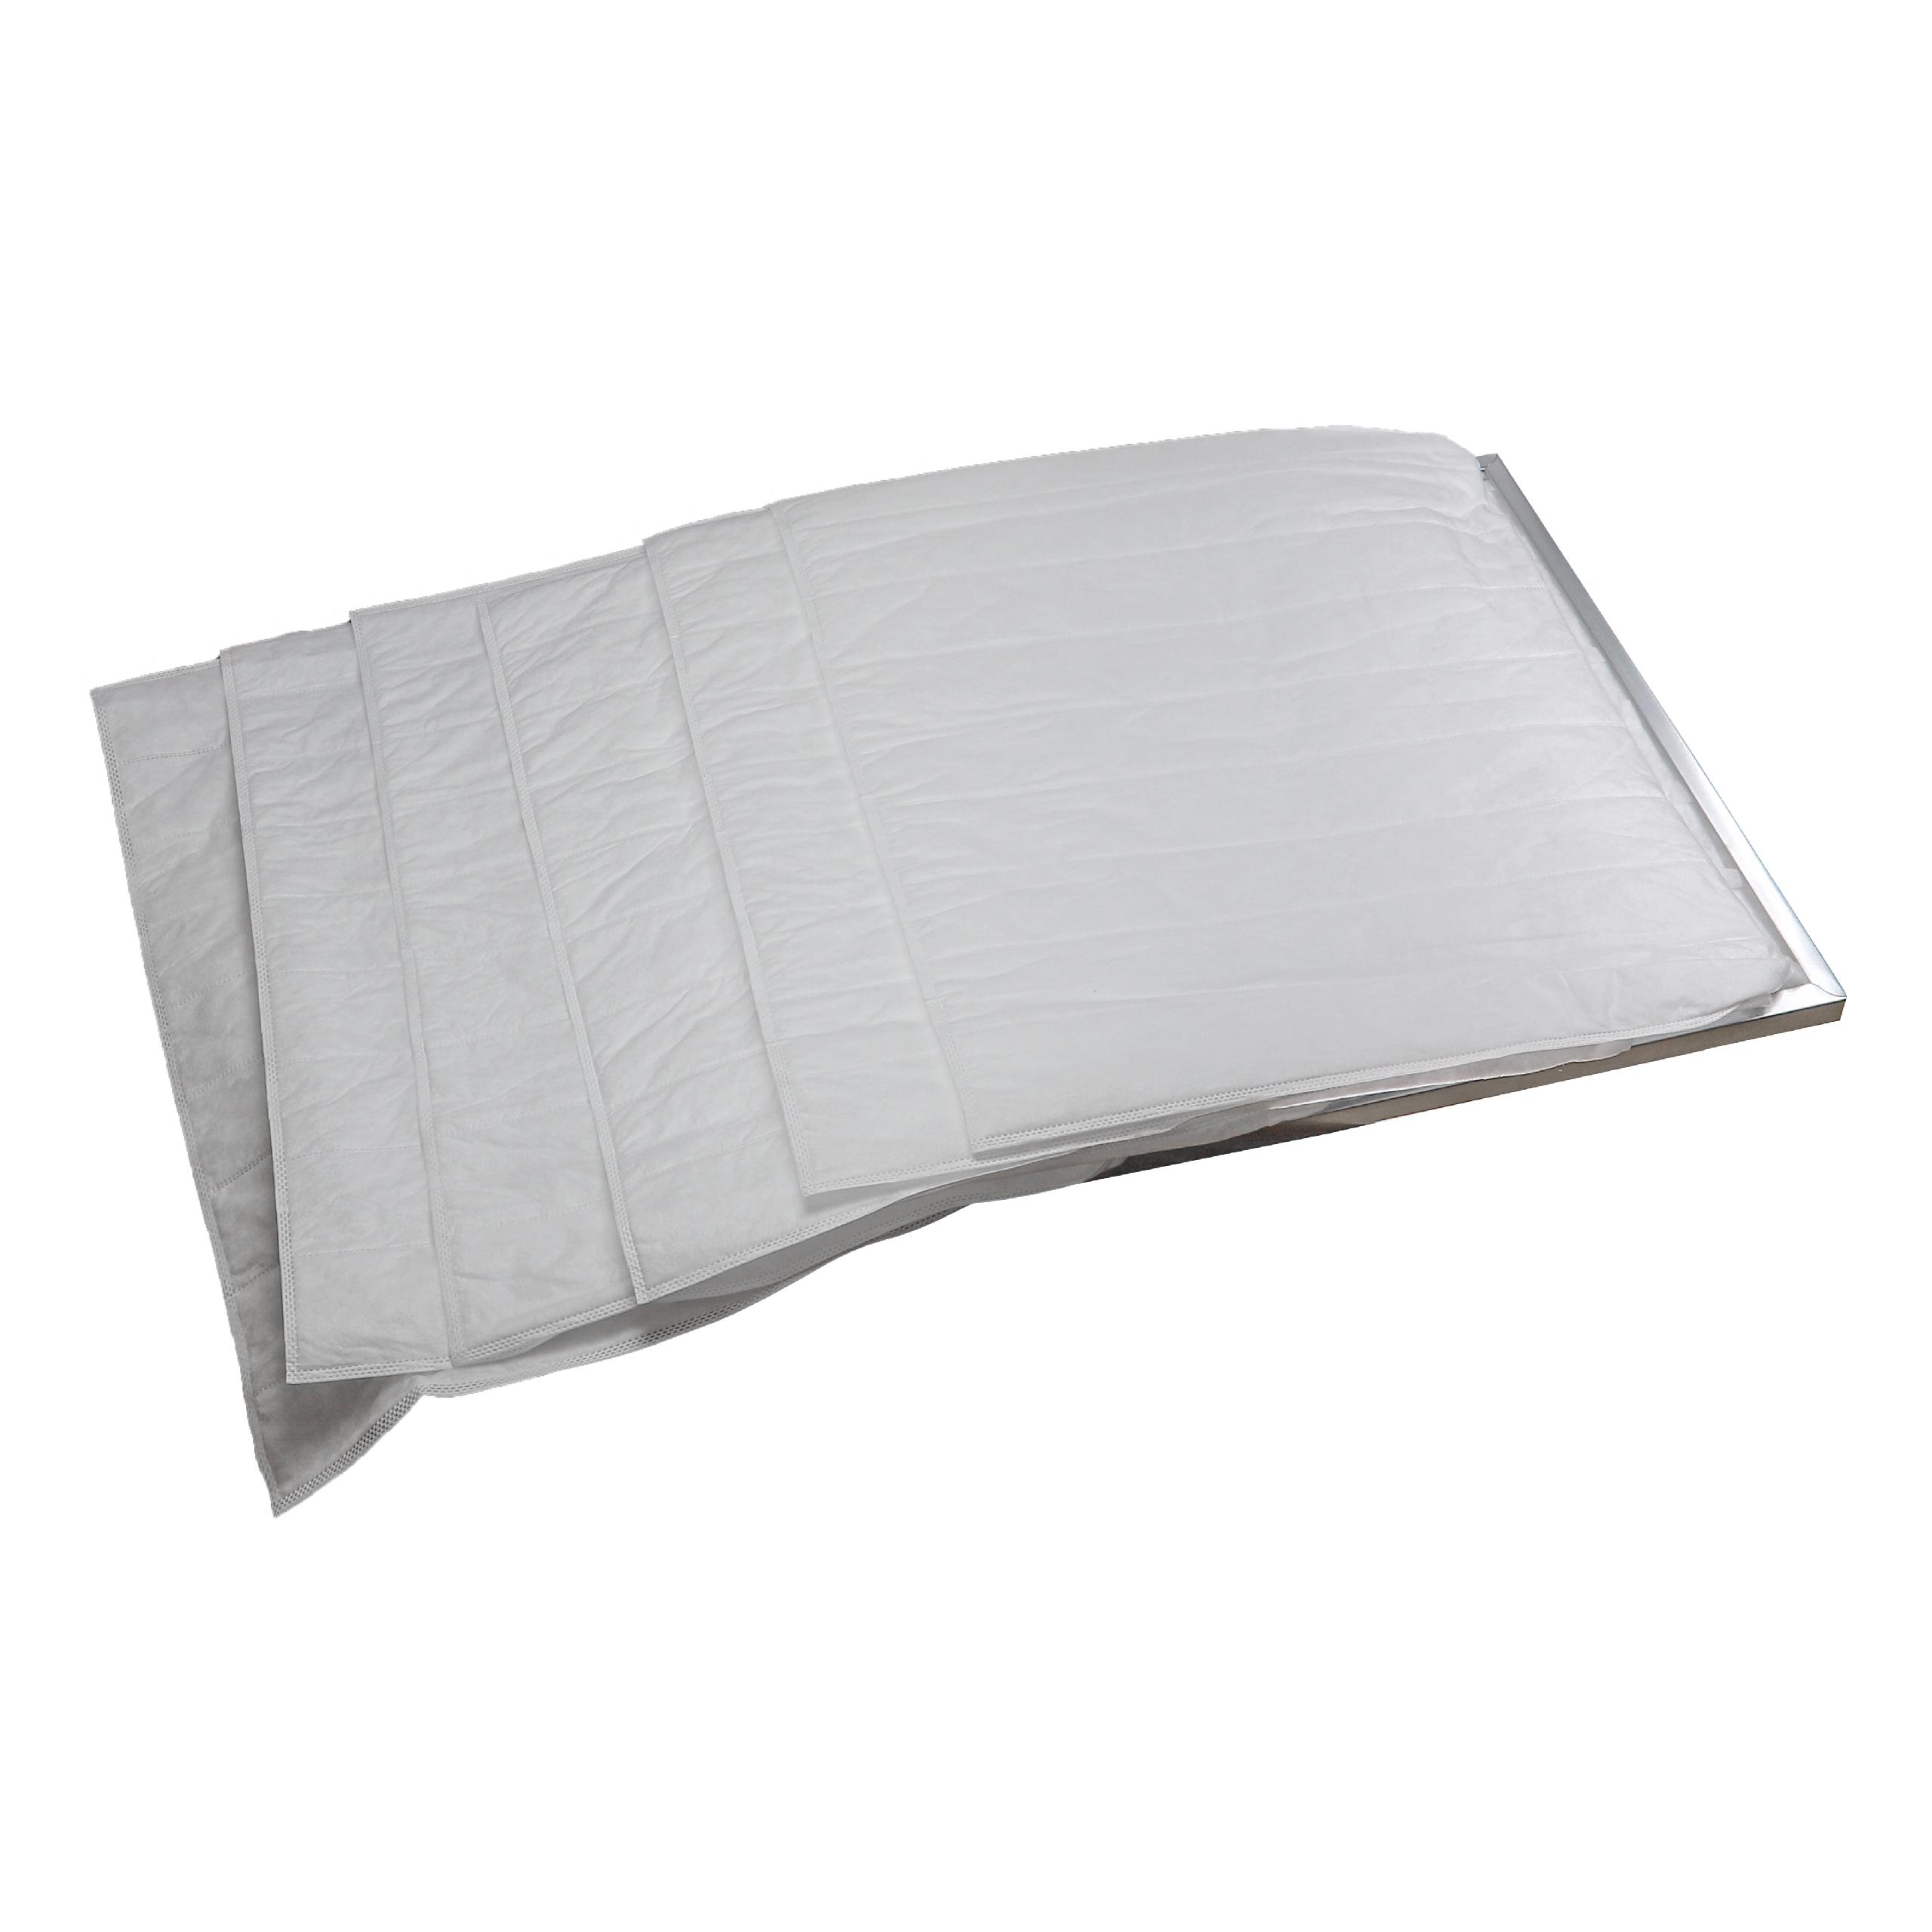 Bolsa de filtro G4 para aire acondicionado, ventilación - 60 x 59,2 x 59,2 cm